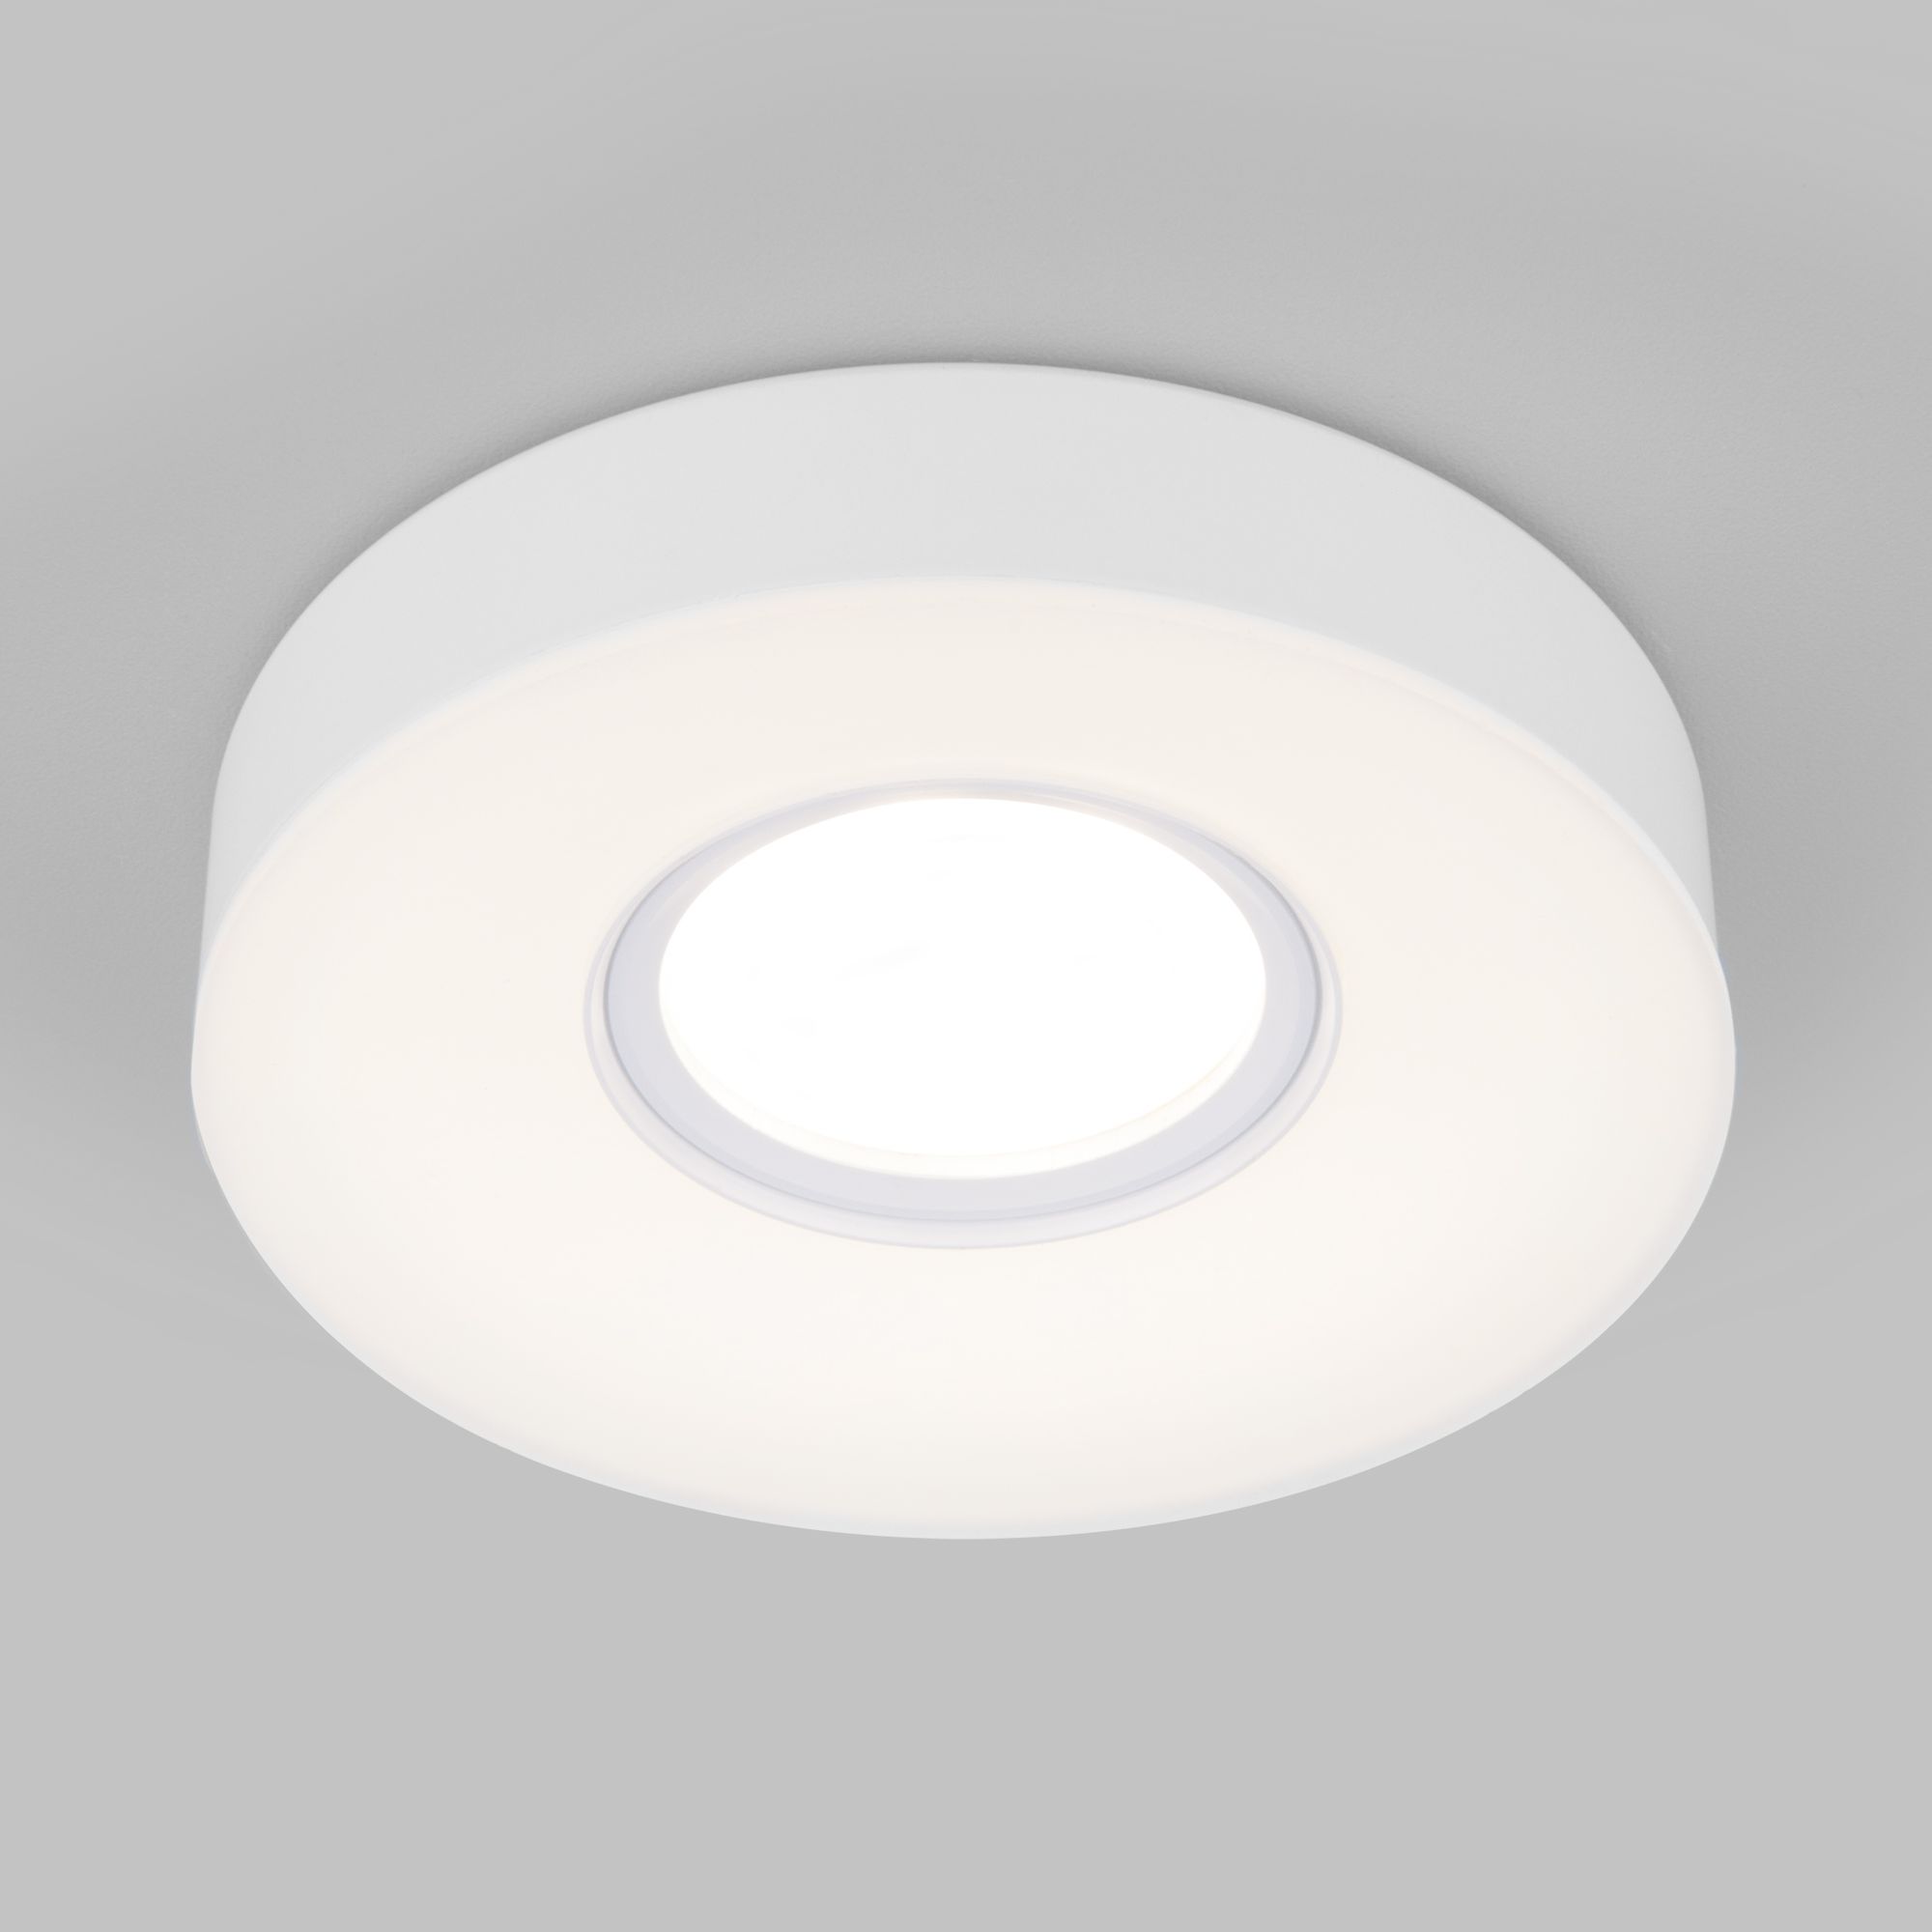 Встраиваемый точечный светильник со светодиодной подсветкой 2240 MR16 WH белый 2240 MR16